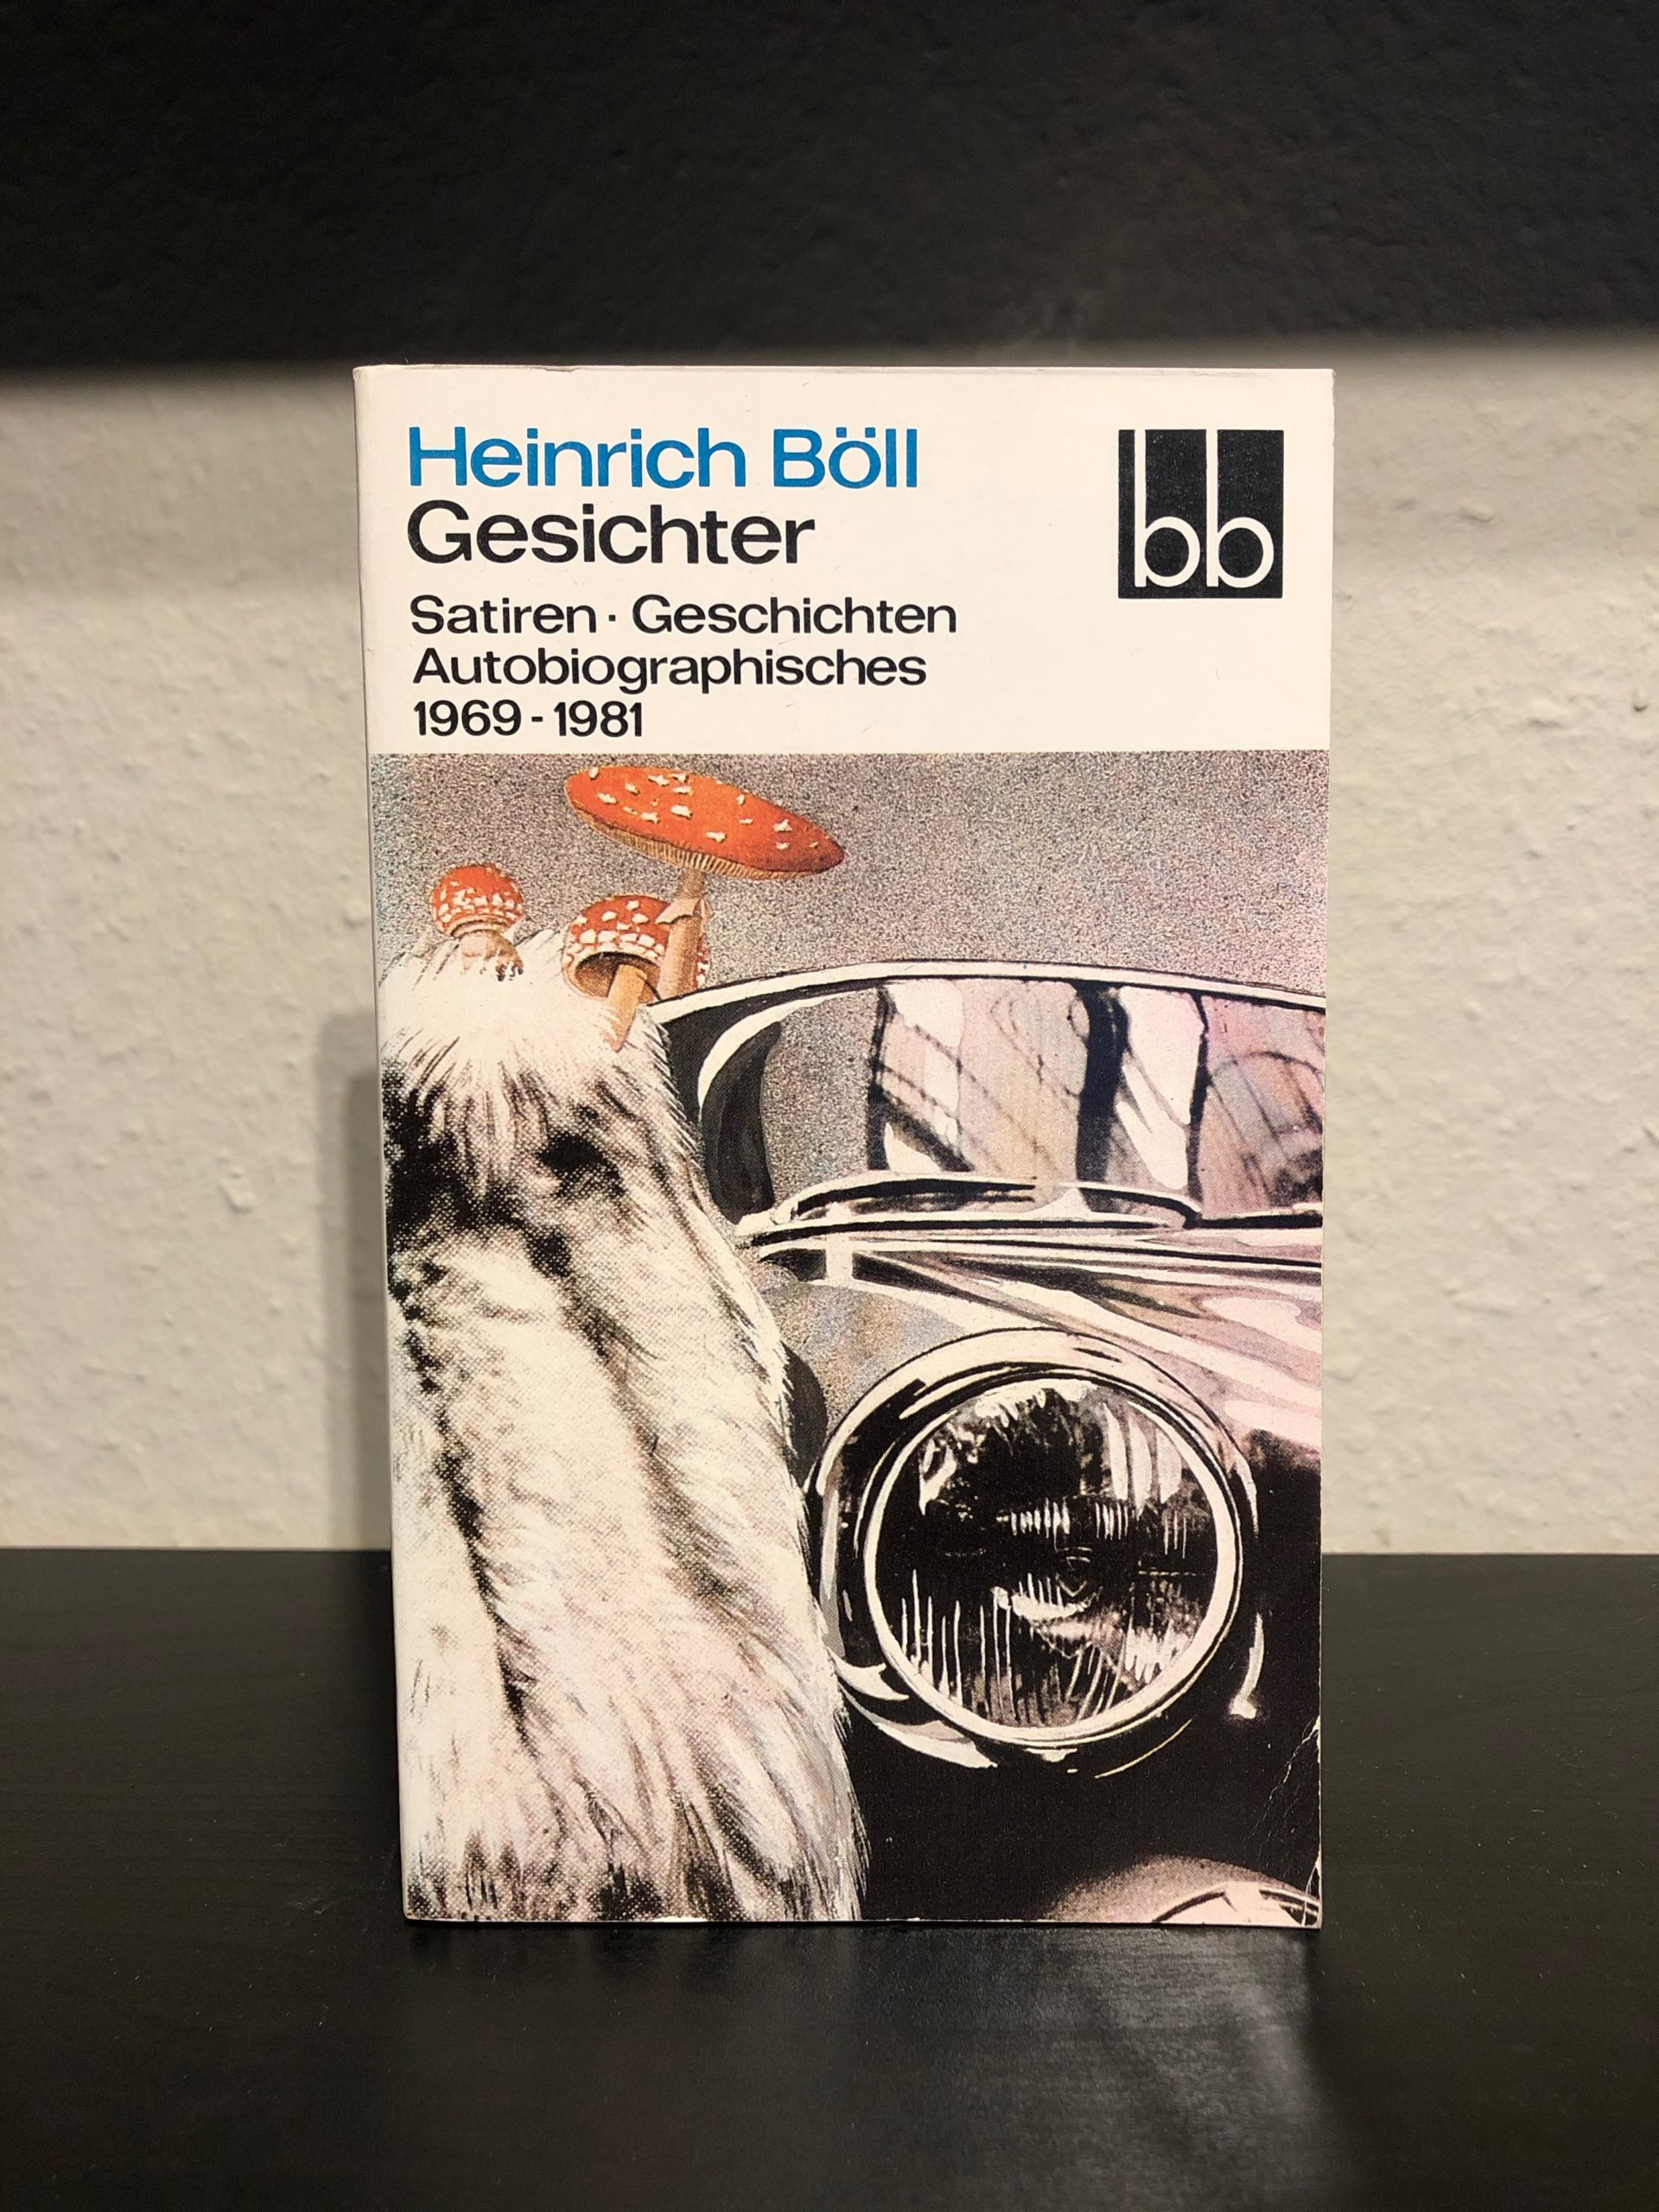 Gesichter - Satiren, Geschichten, Autobiographisches 1969-1981 - Heinrich Böll-image